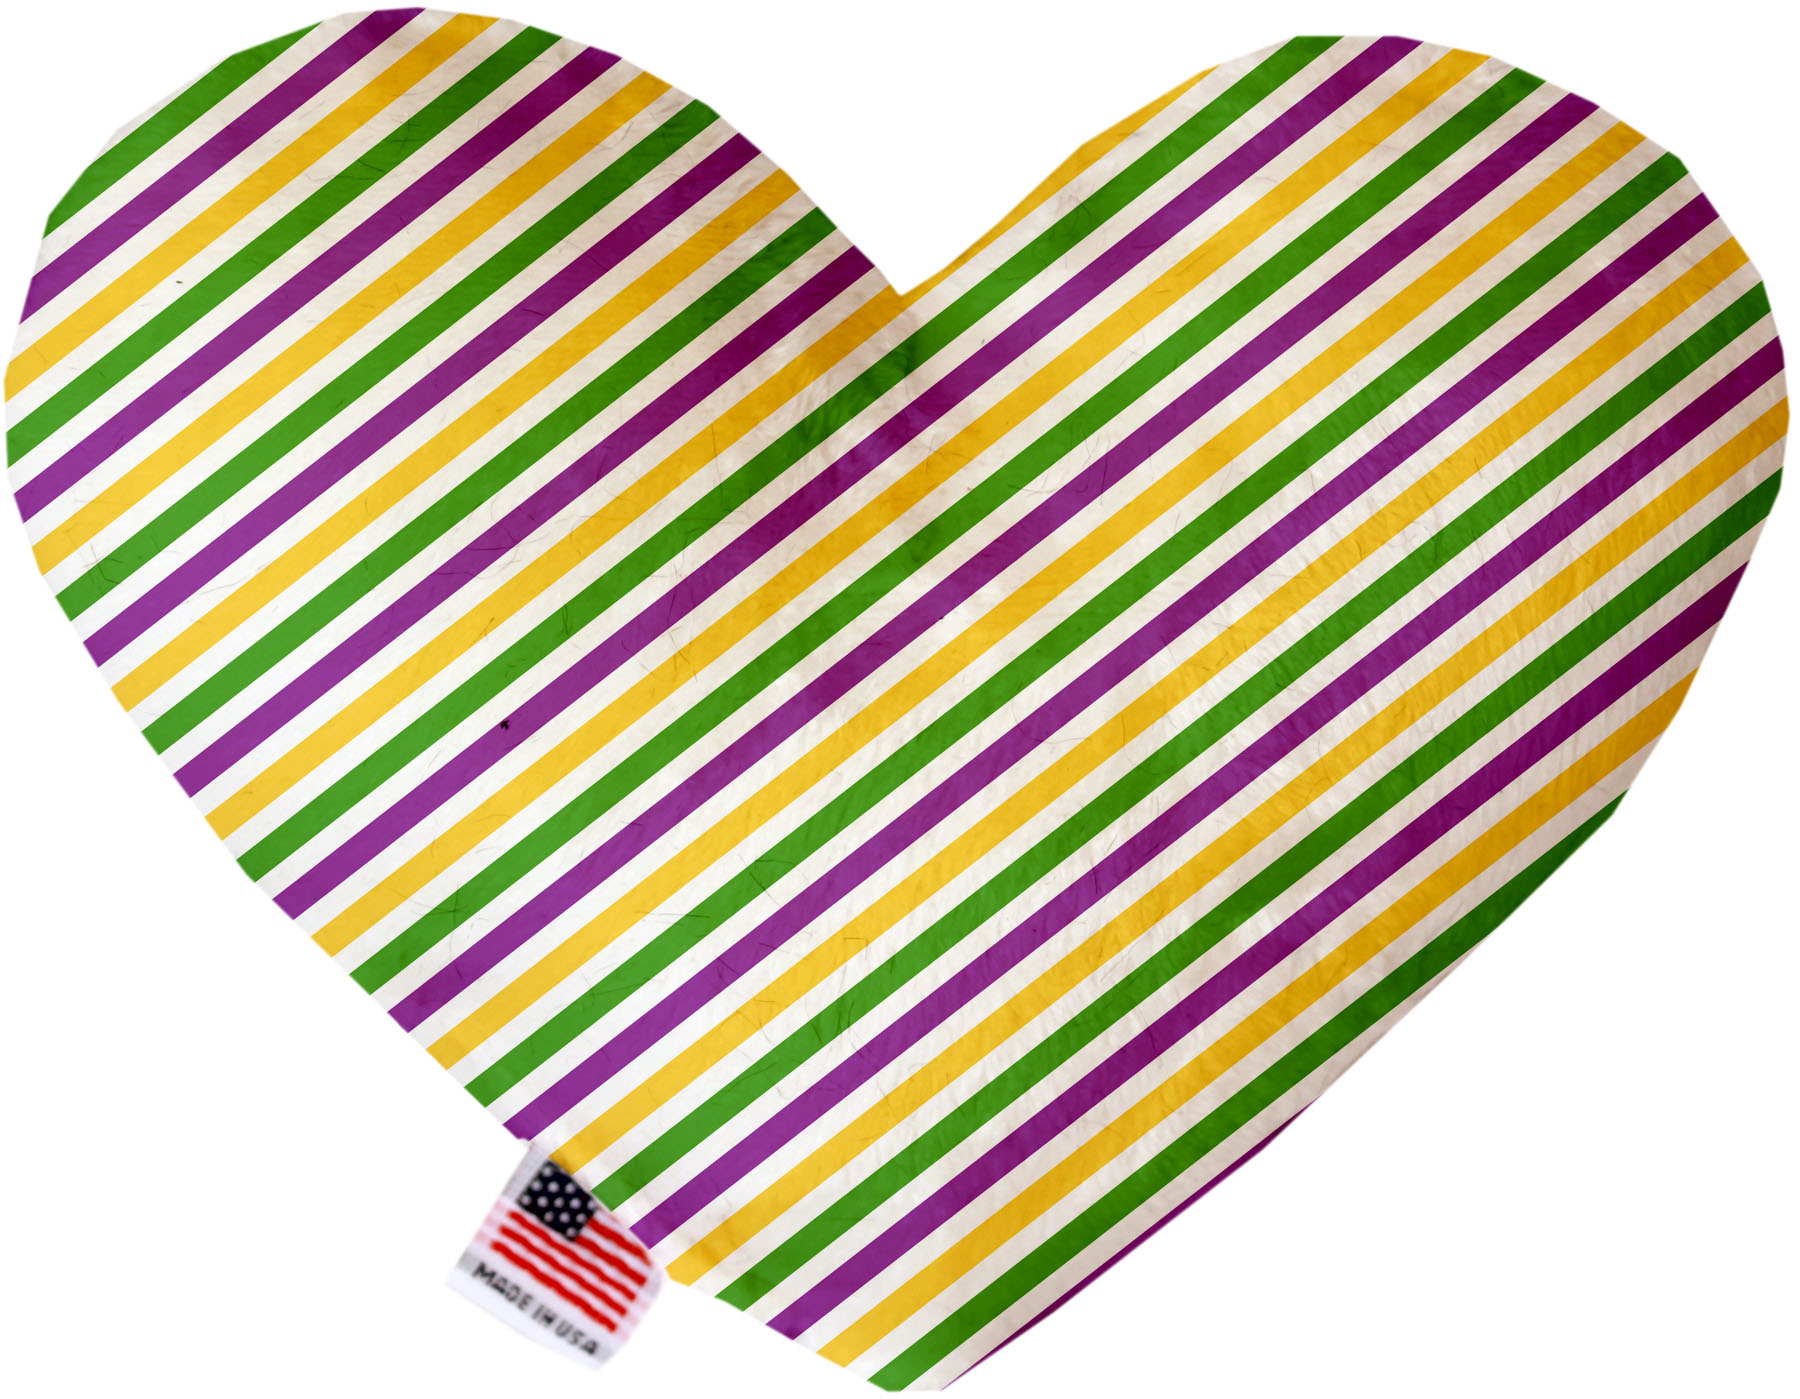 Mardi Gras Stripes 6 inch Canvas Heart Dog Toy